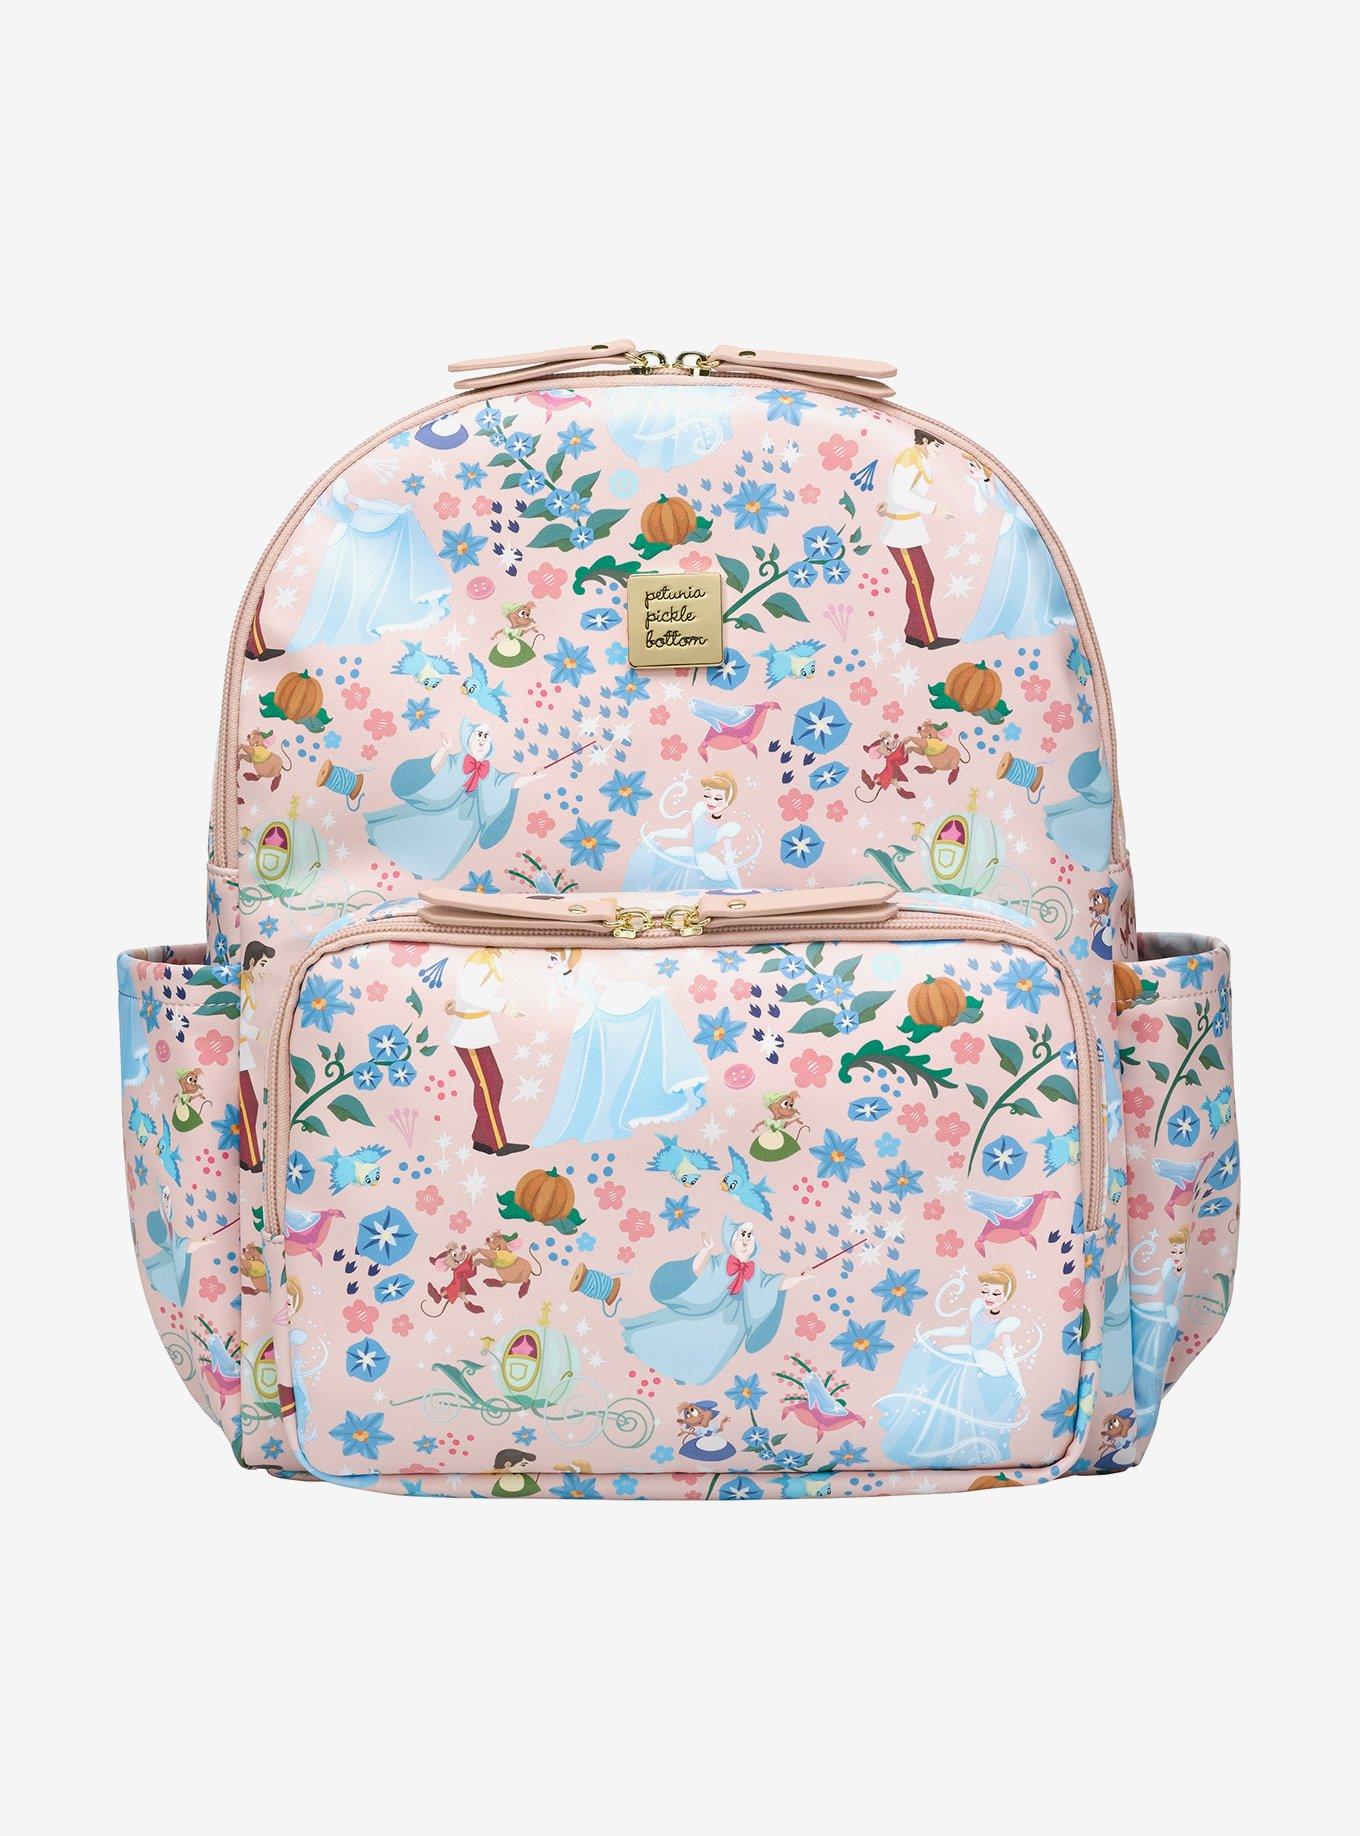  Petunia Pickle Bottom Mini Backpack